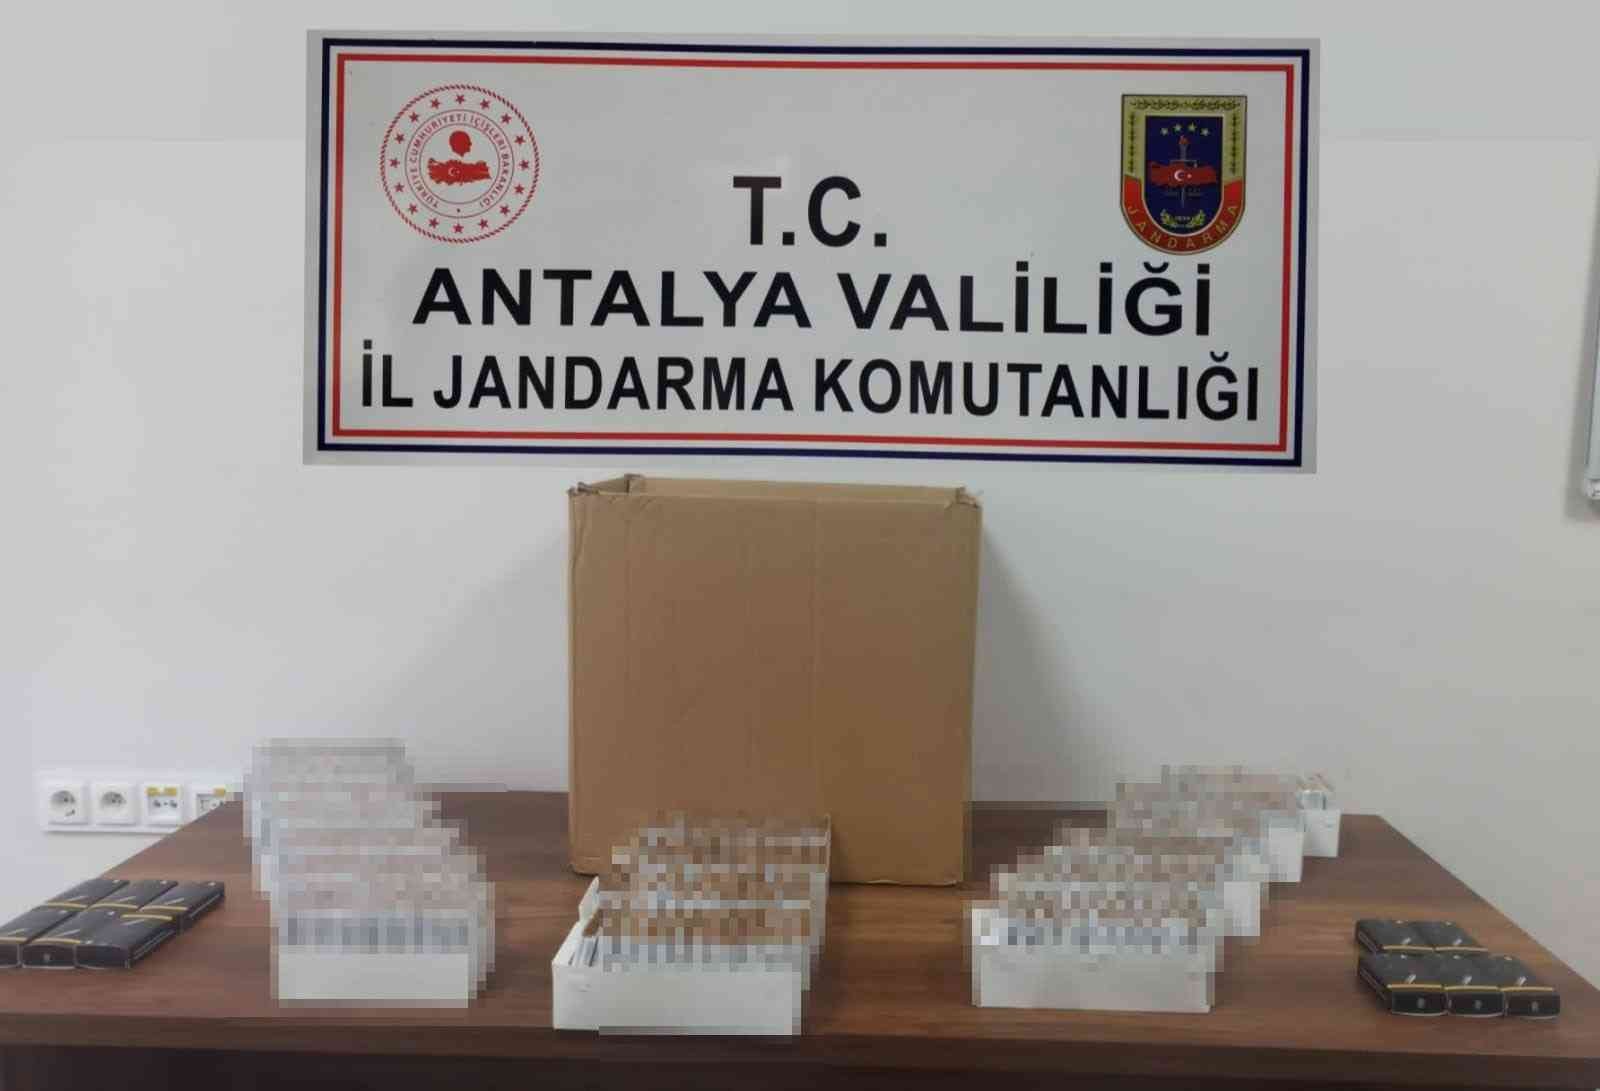 Antalya’da kaçak makaron ele geçirildi #antalya